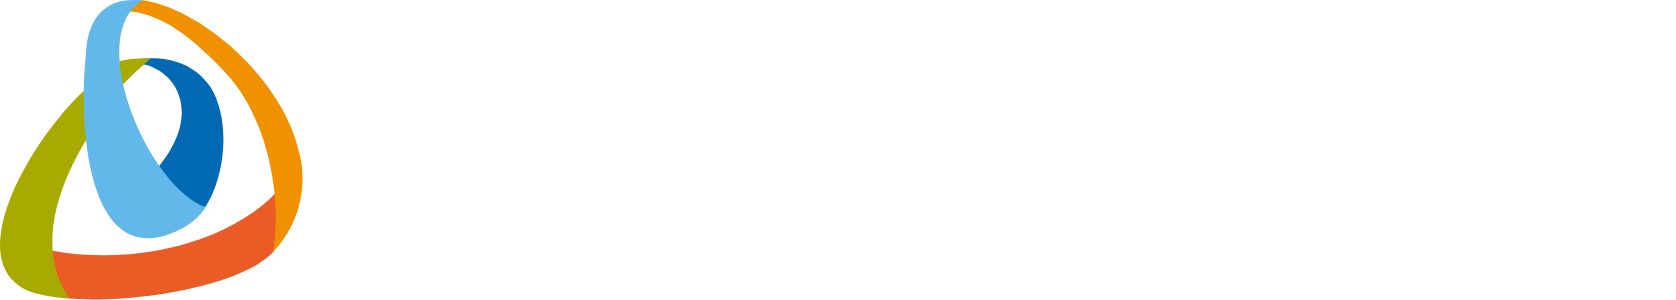 Grid Dynamics logo grand pour les fonds sombres (PNG transparent)